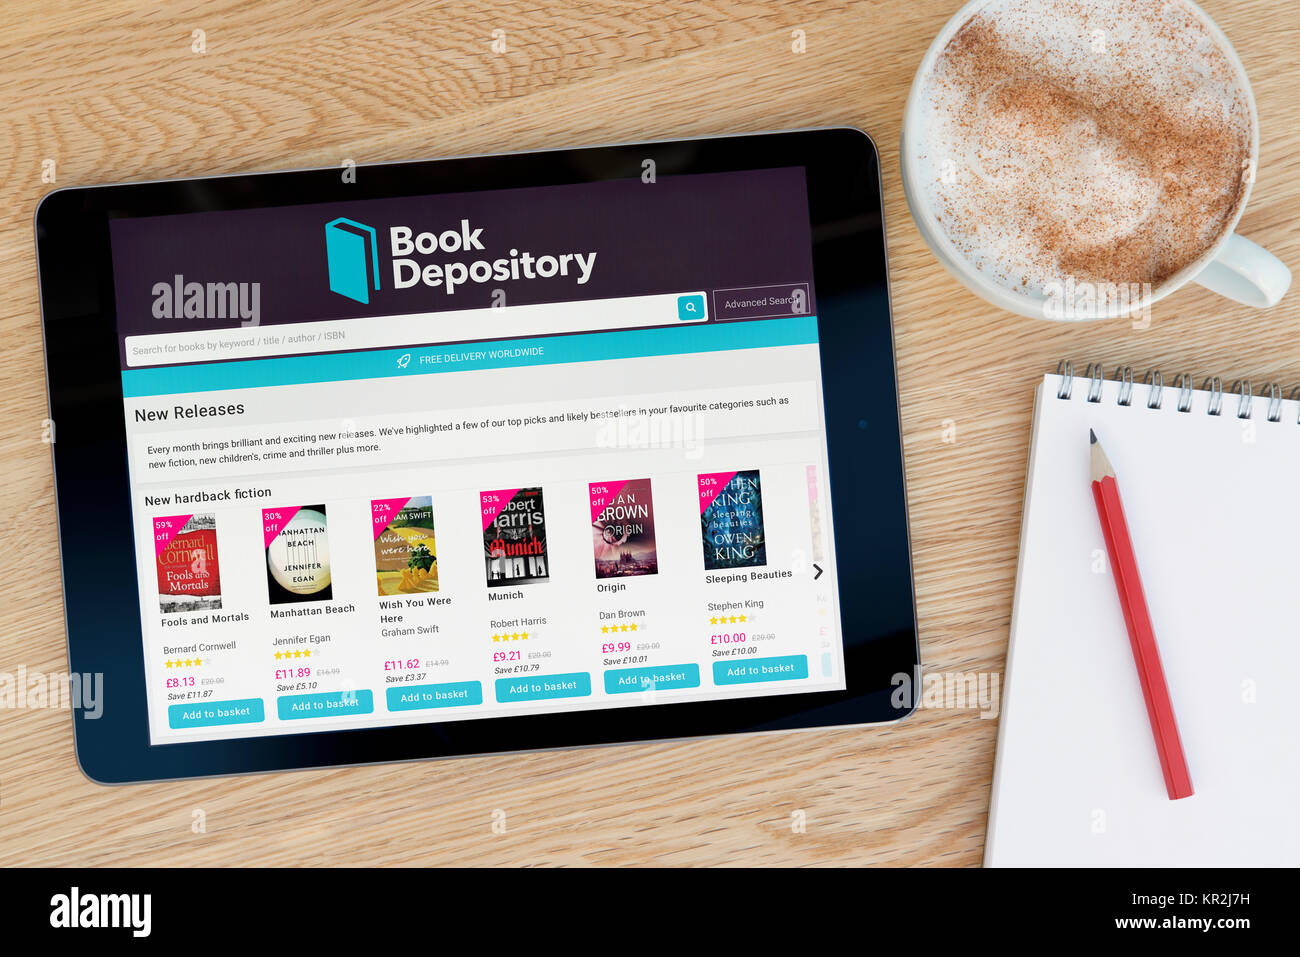 Die Book Depository Website auf einem iPad Tablet Gerät, das auf einem Tisch liegt neben einem Notizblock und Bleistift und eine Tasse Kaffee (nur redaktionell) Stockfoto